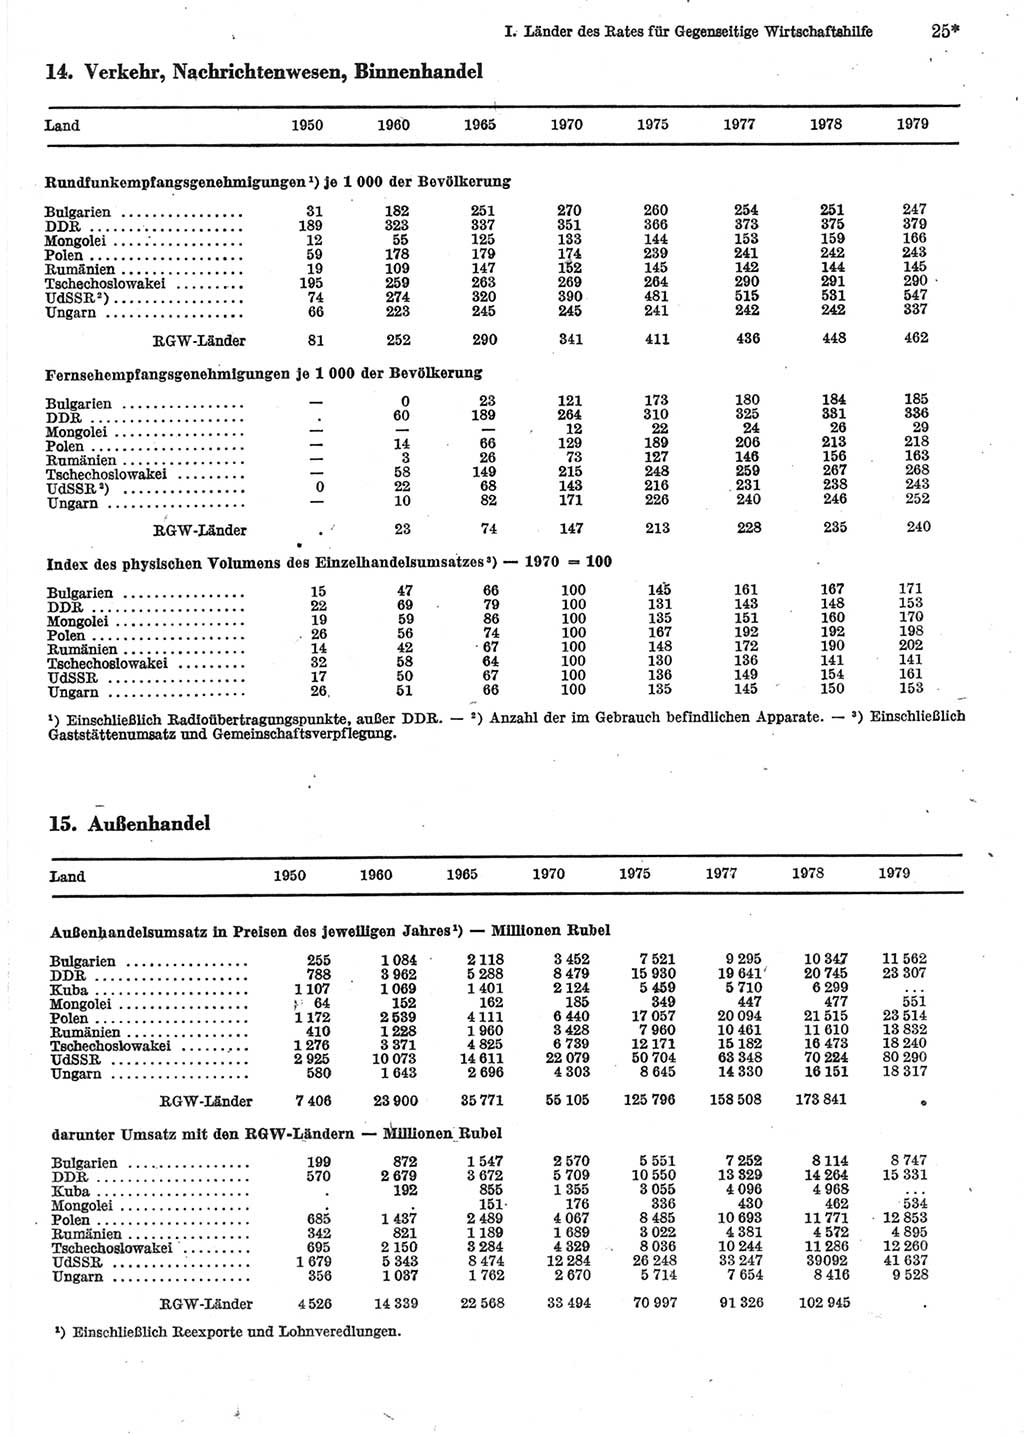 Statistisches Jahrbuch der Deutschen Demokratischen Republik (DDR) 1981, Seite 25 (Stat. Jb. DDR 1981, S. 25)